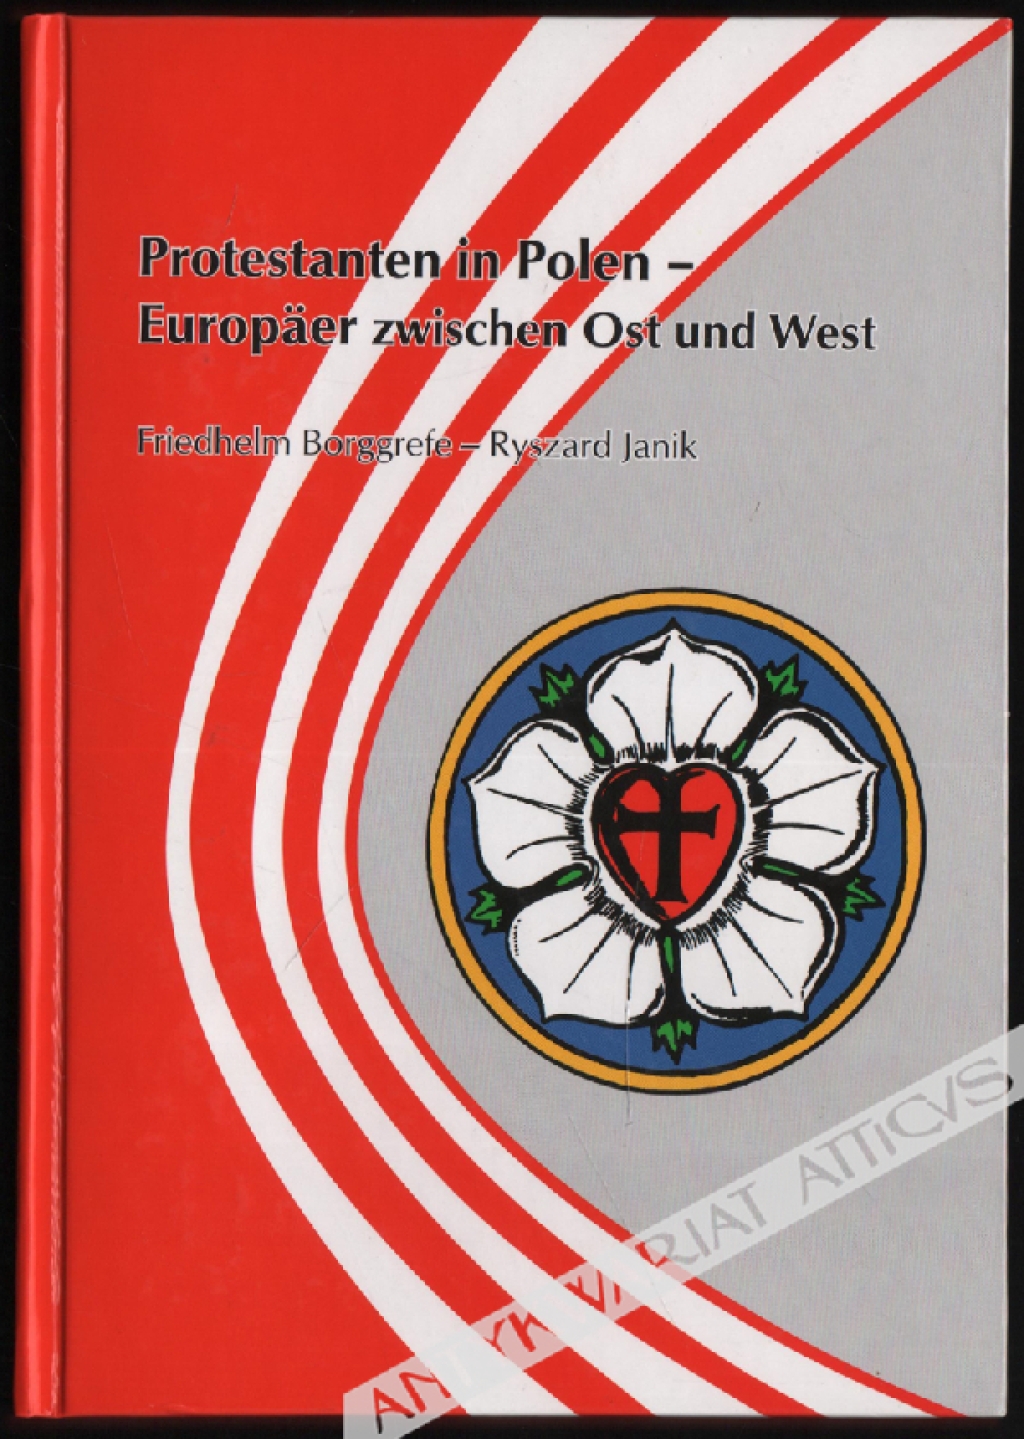 Protestanten in Polen - Europaer zwischen Ost und West [dedykacja od Ryszarda Janika]